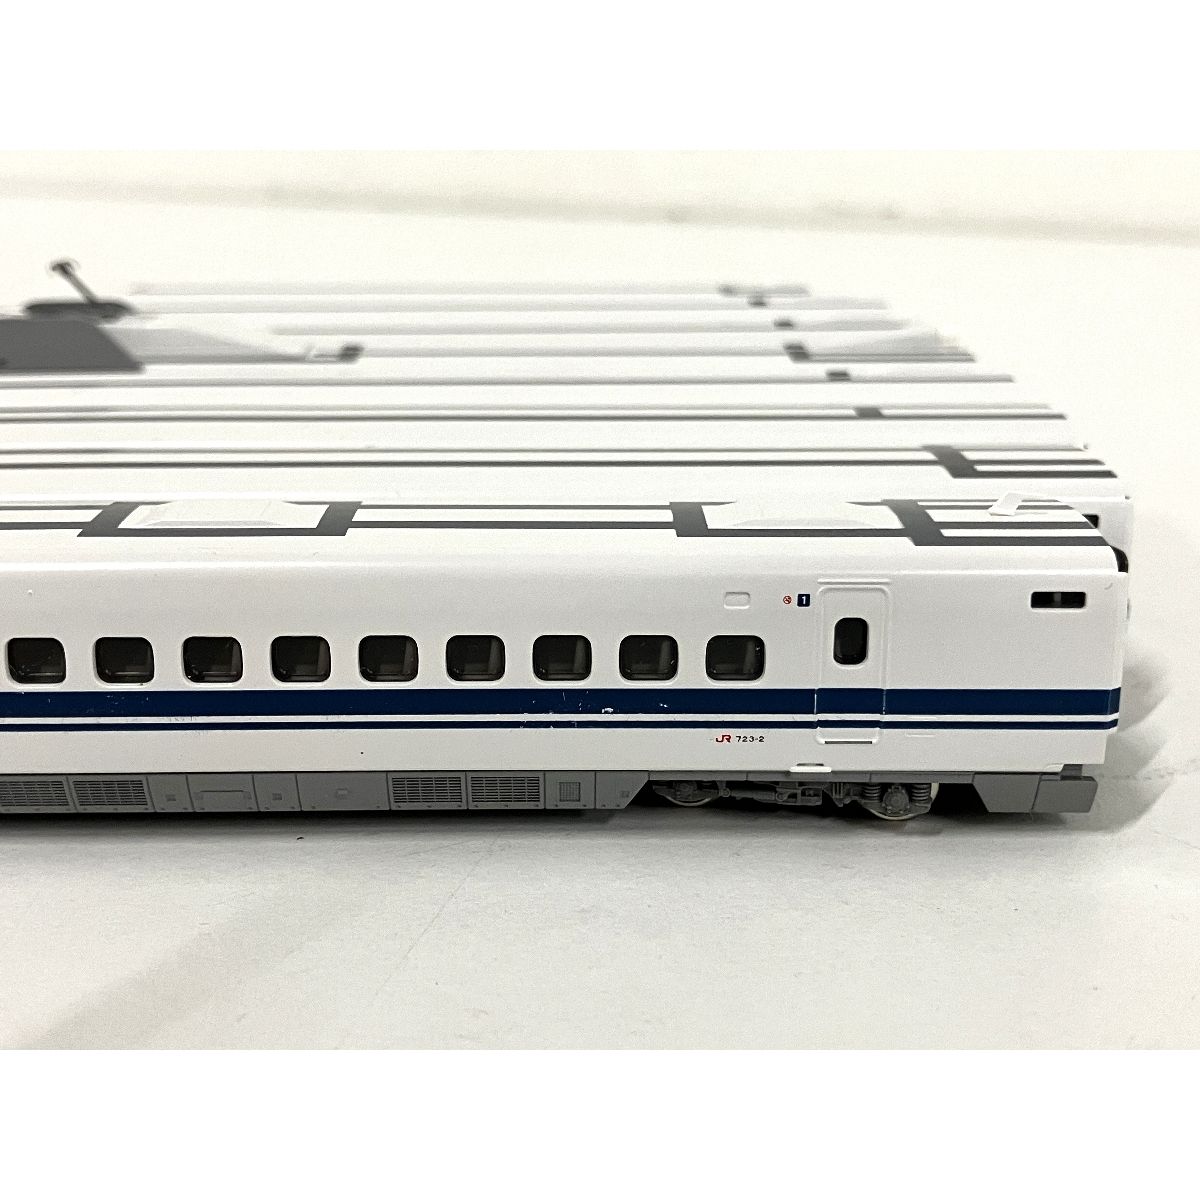 KATO 10-397 700系新幹線「のぞみ」 8両基本セット Nゲージ 鉄道模型 